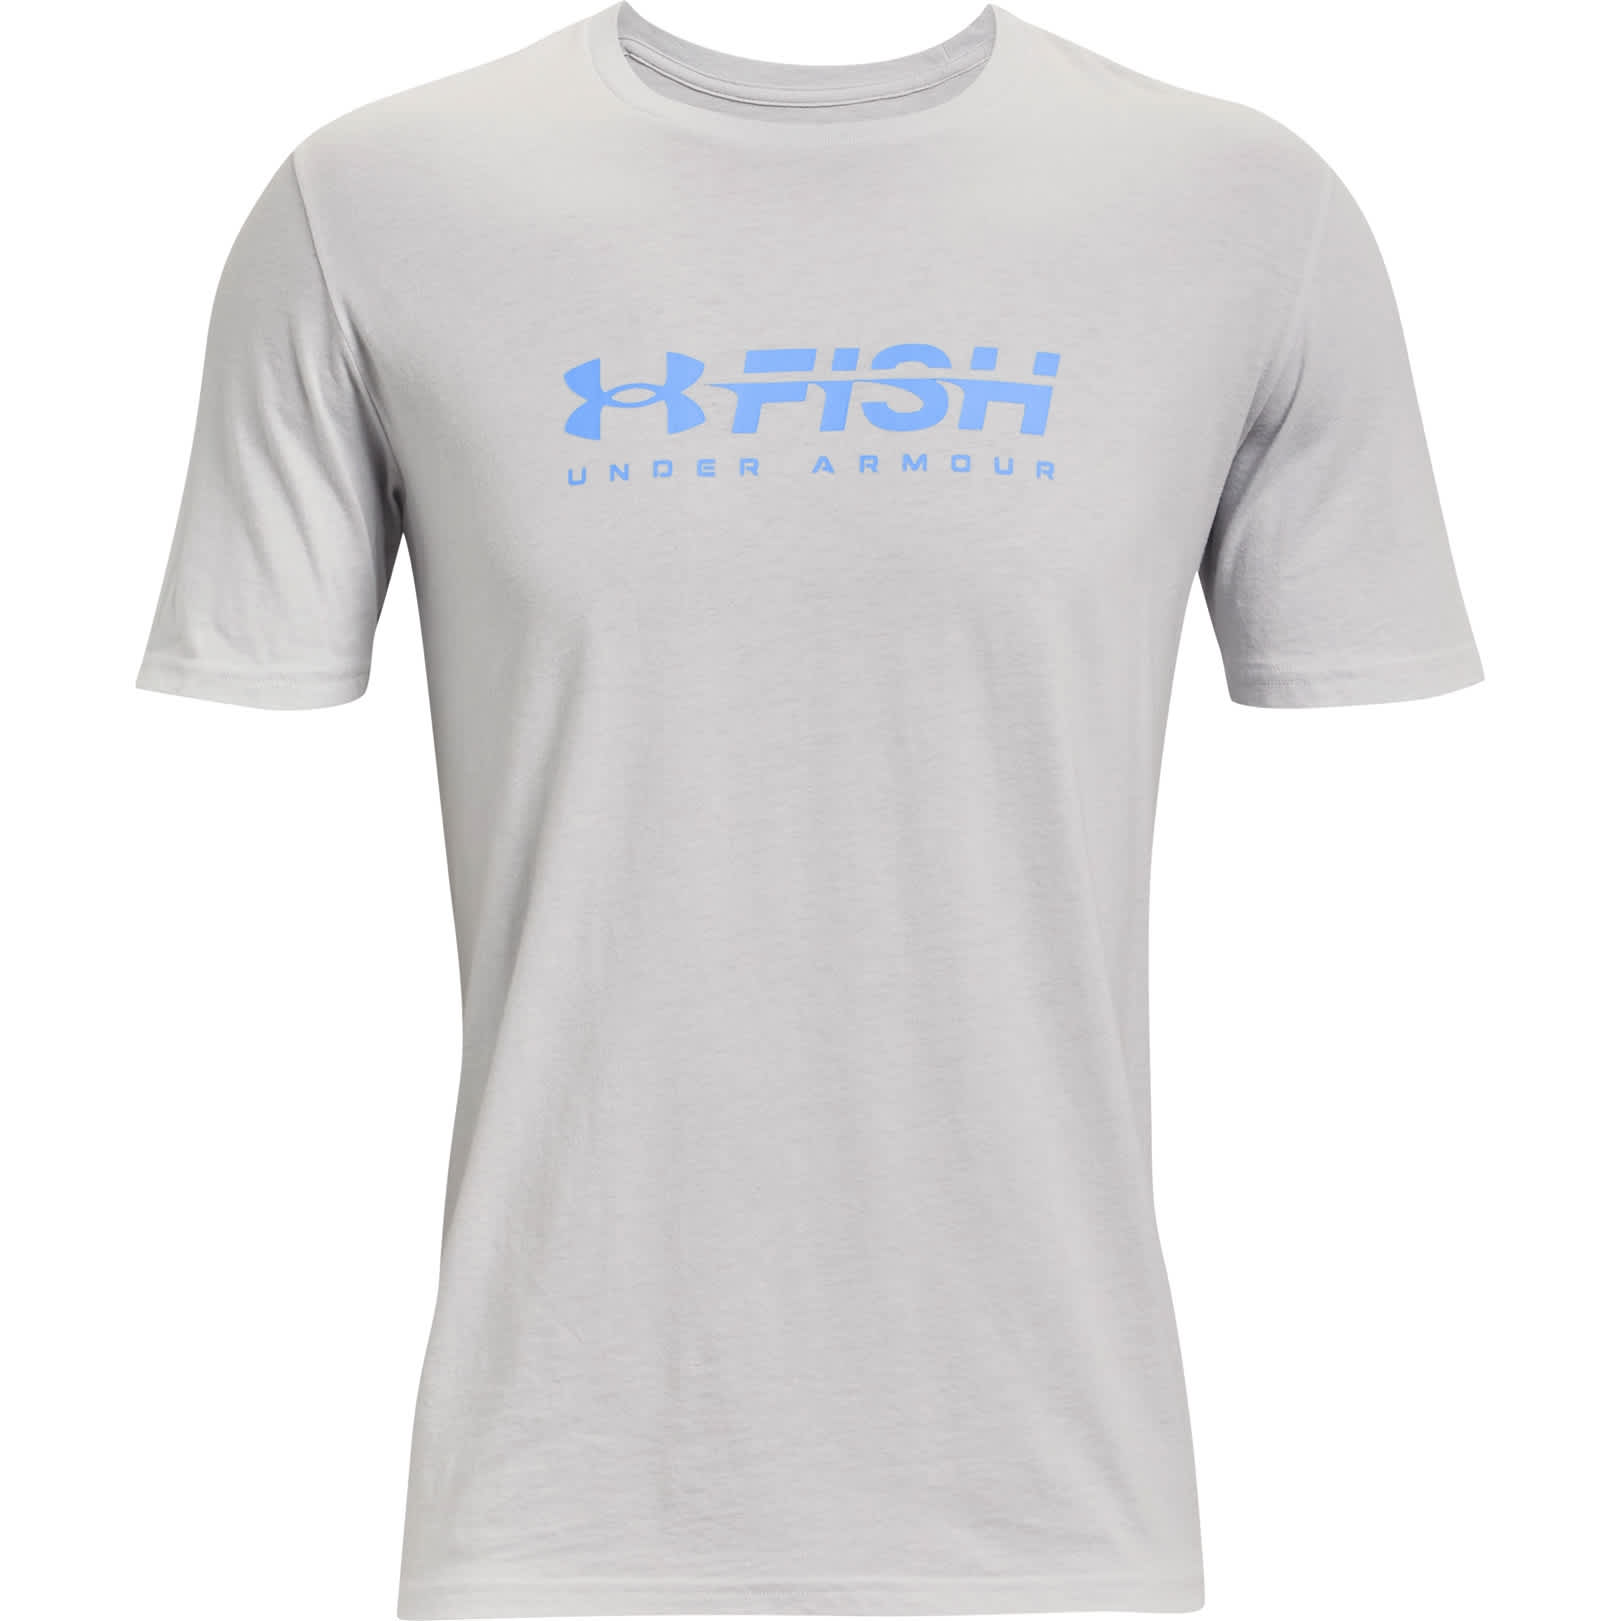 Ua Fishing Shirt